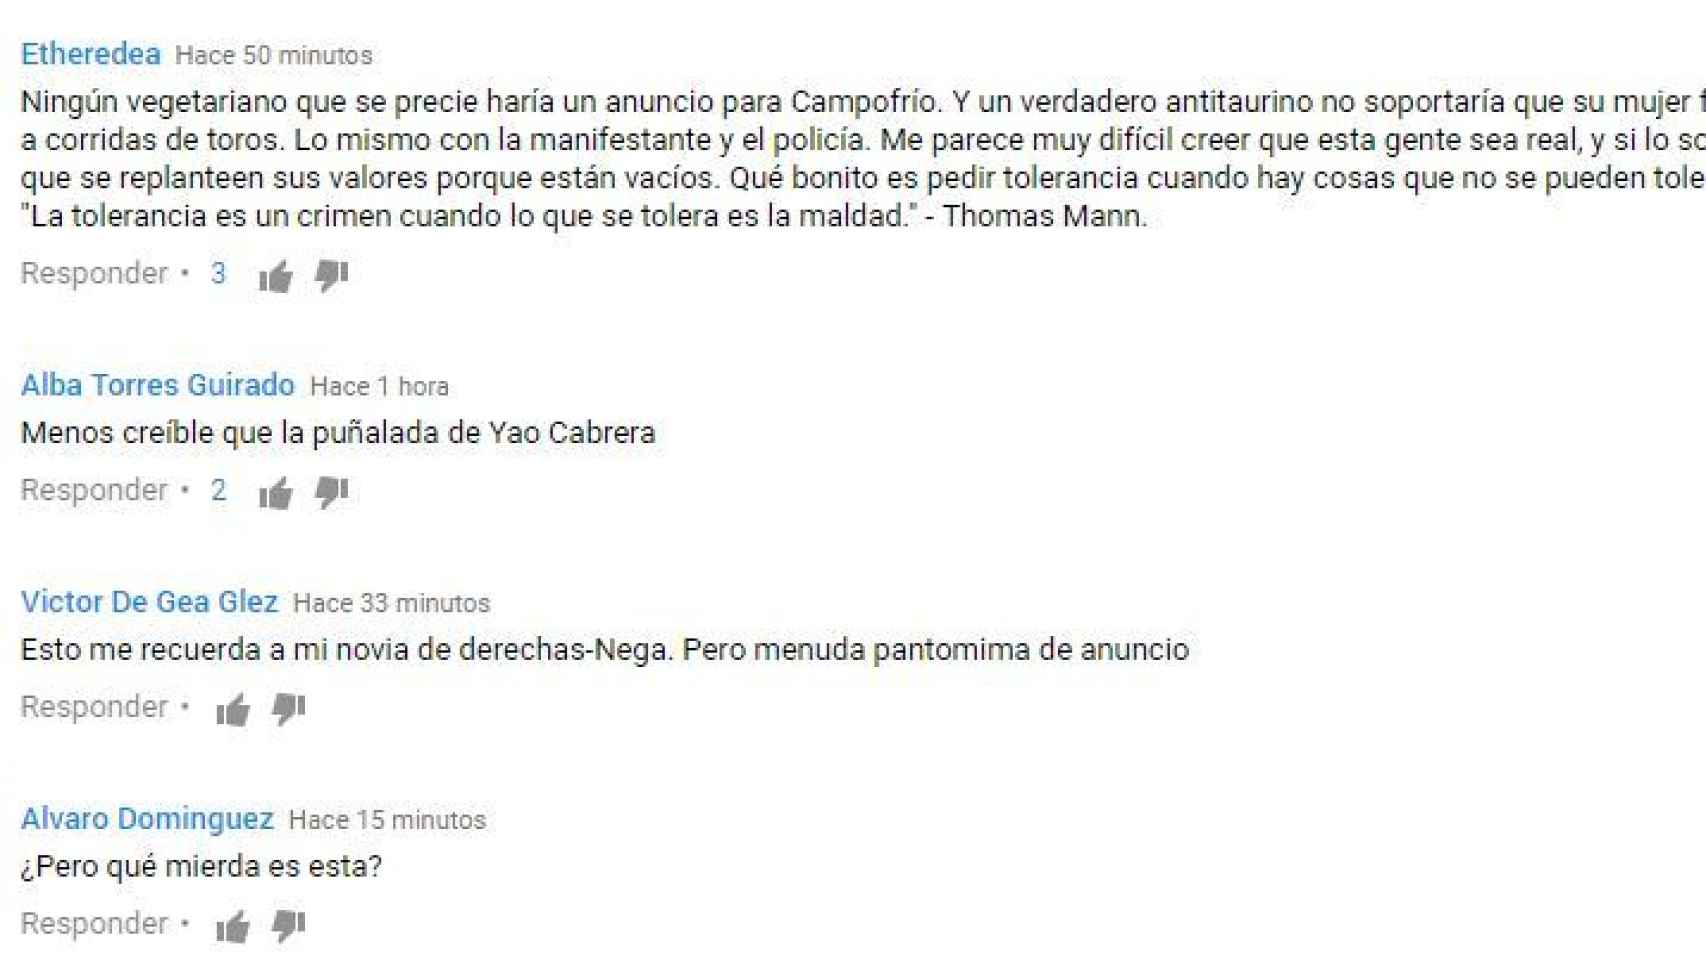 Comentarios críticos en la página de Youtube de Campofrío.